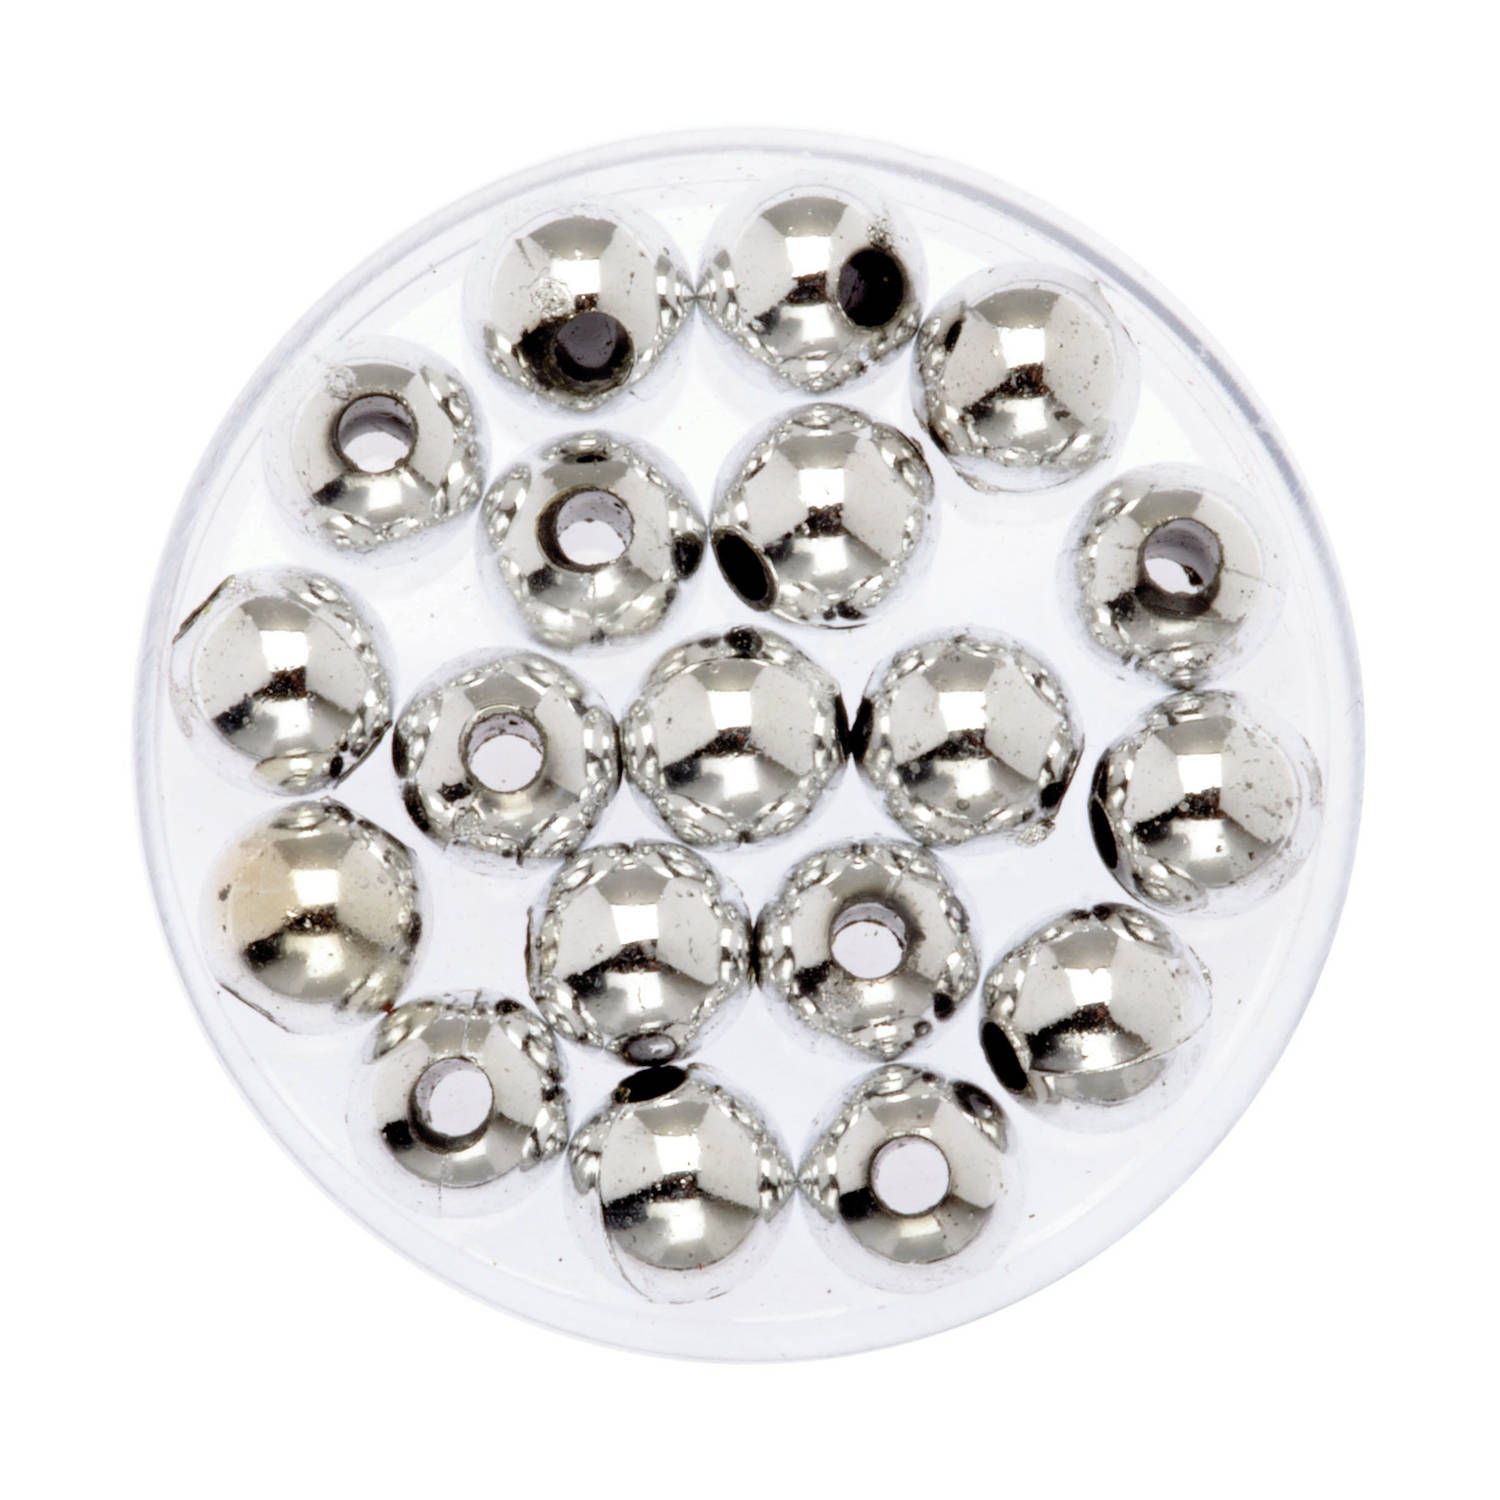 120x Stuks Sieraden Maken Glans Deco Kralen In Het Zilver Van 8 Mm?- Kunststof Reigkralen Voor Armba